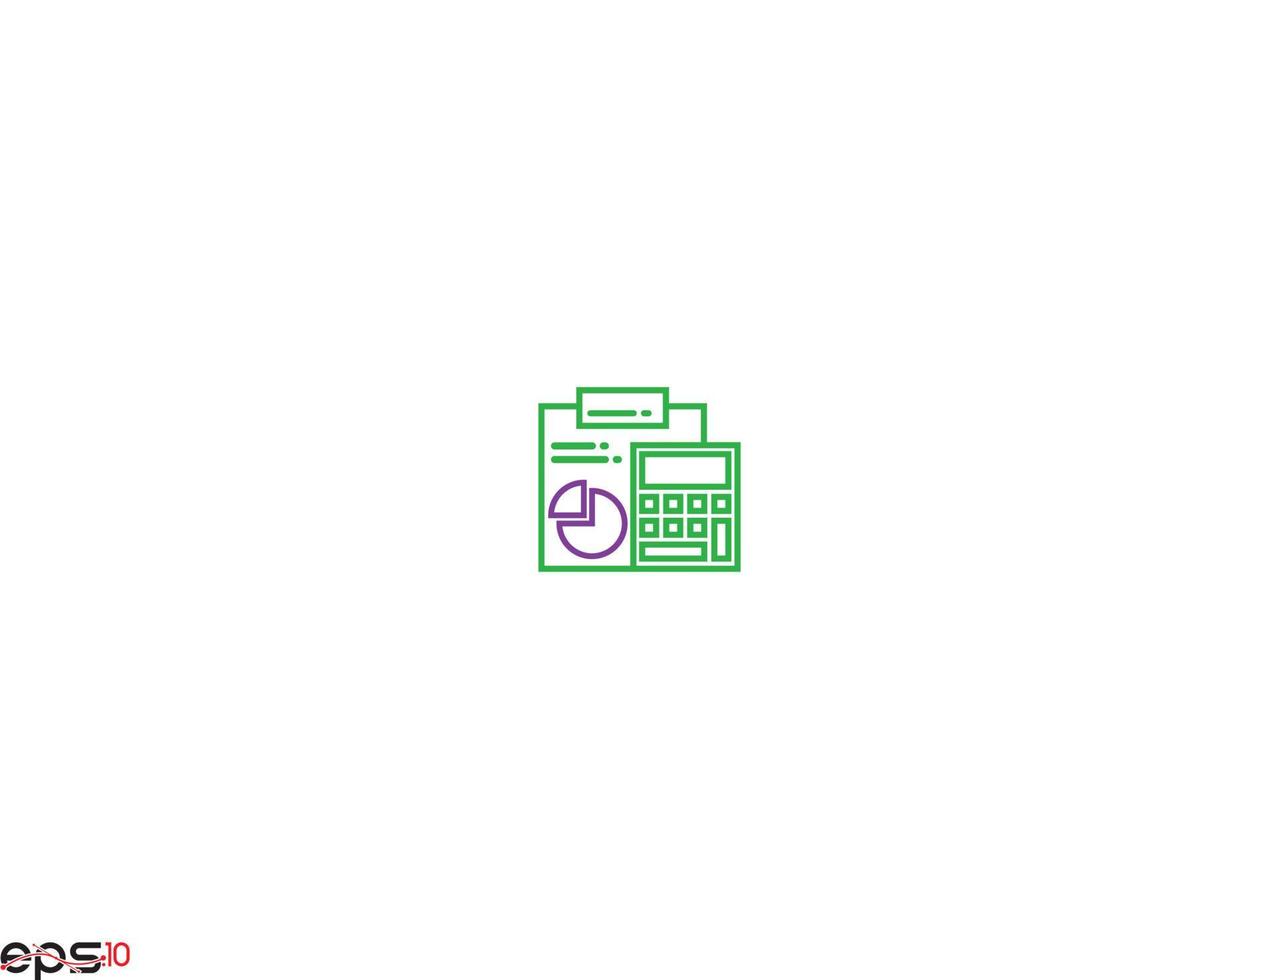 conception d'icônes commerciales et financières. conception d'illustration d'icône financière vecteur